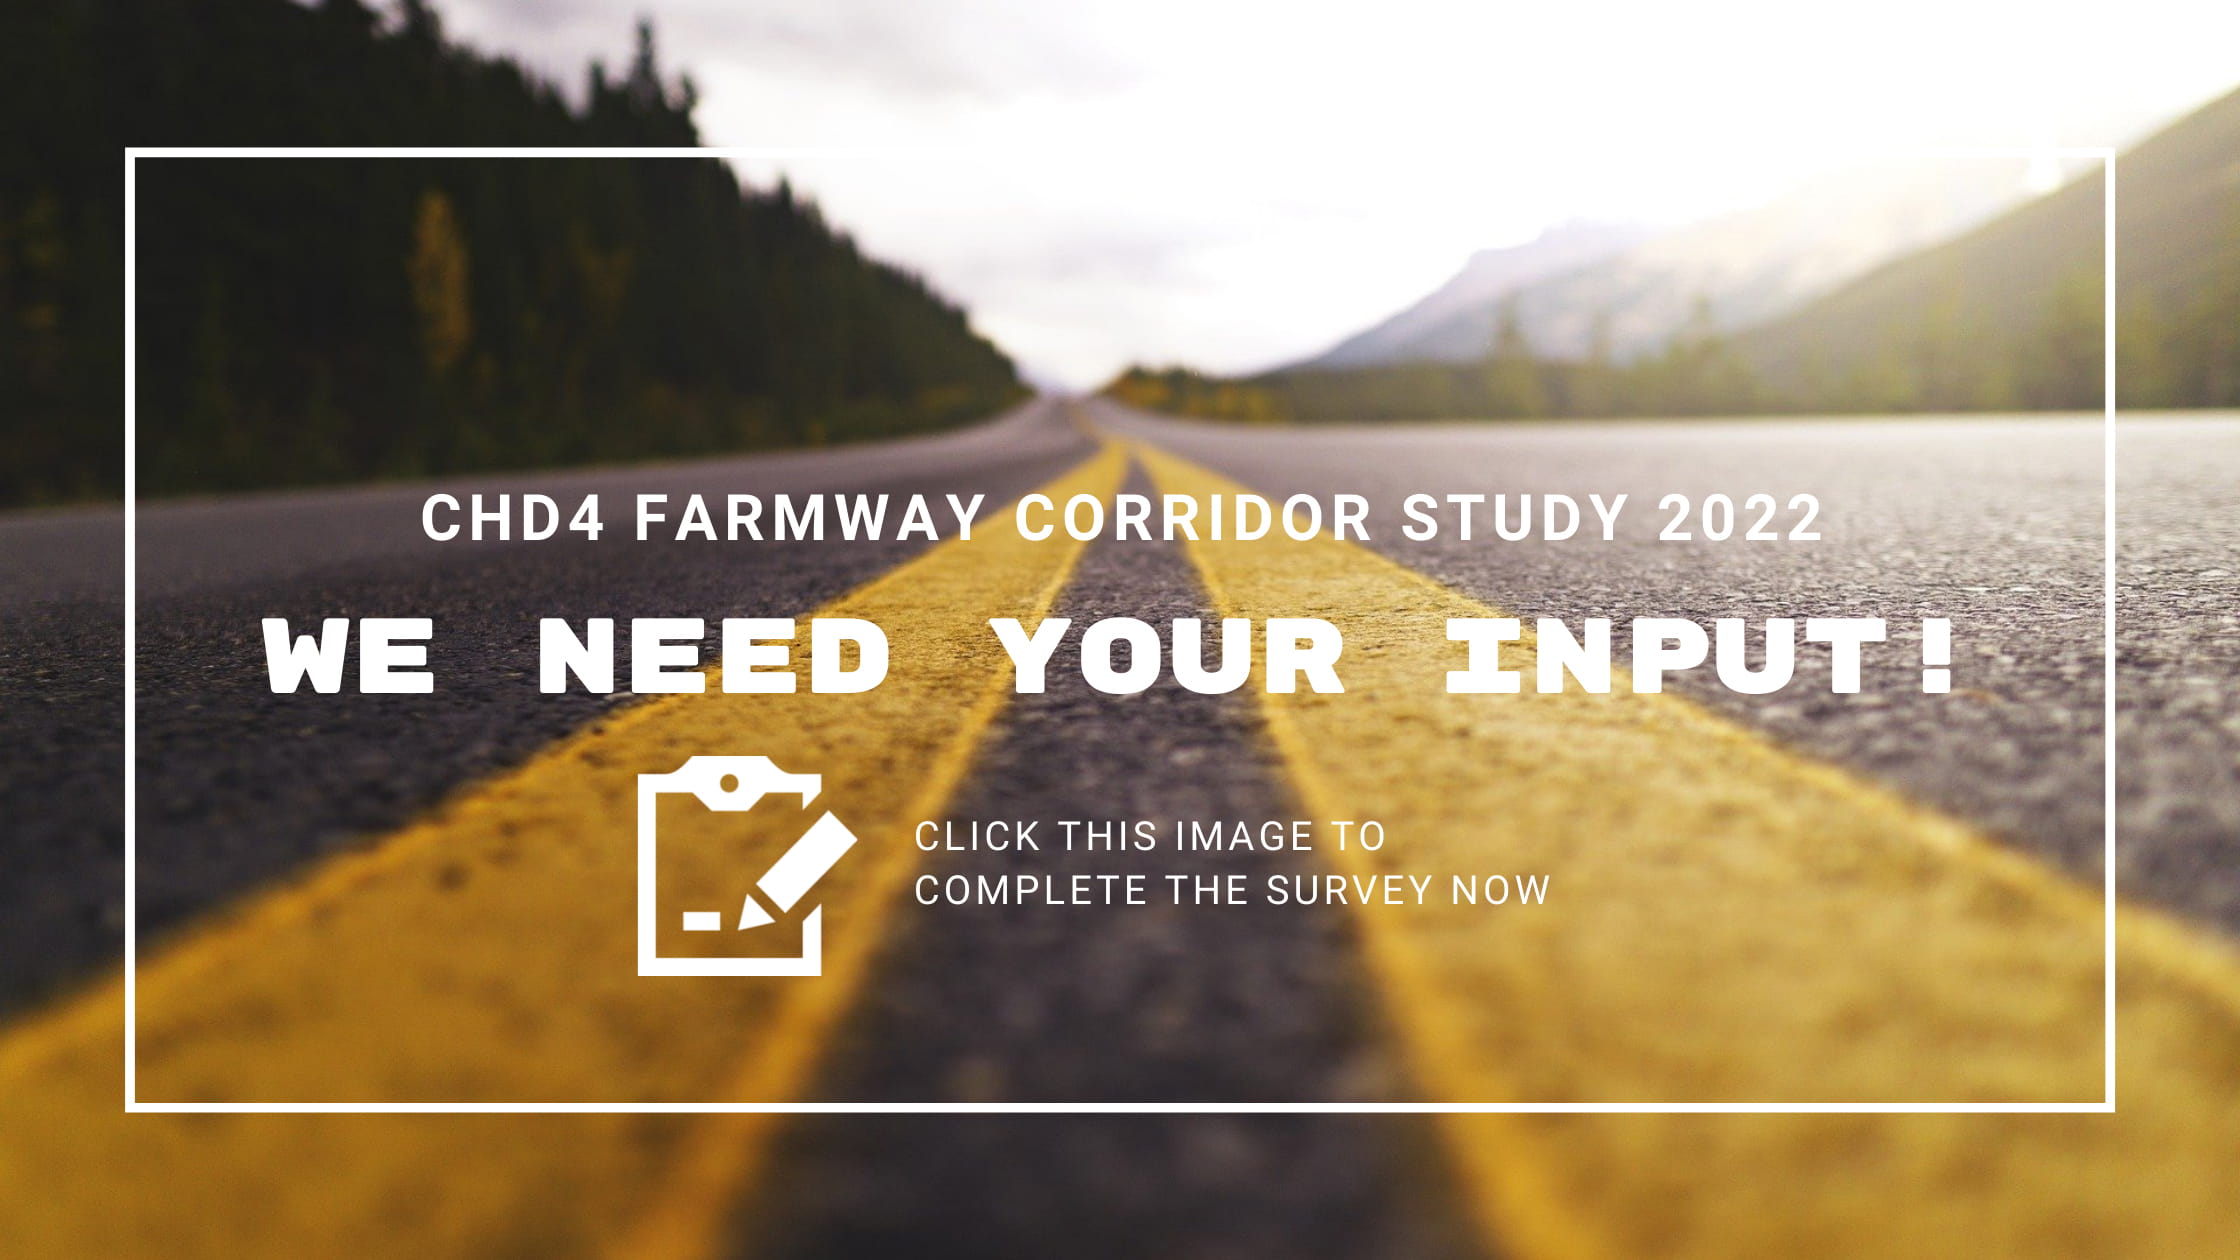 CHD4 Farmway Corridor Study 2022 Questionairre